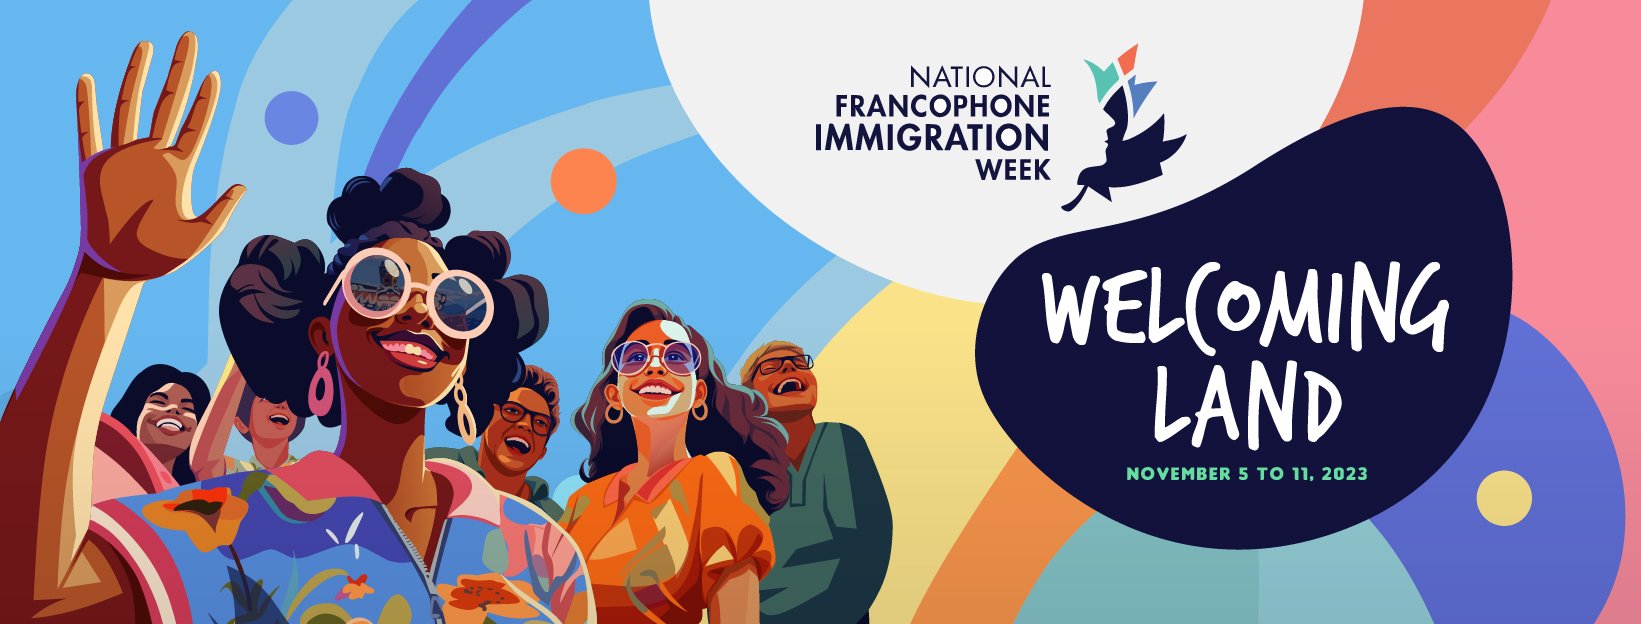 National Francophone Immigration Week